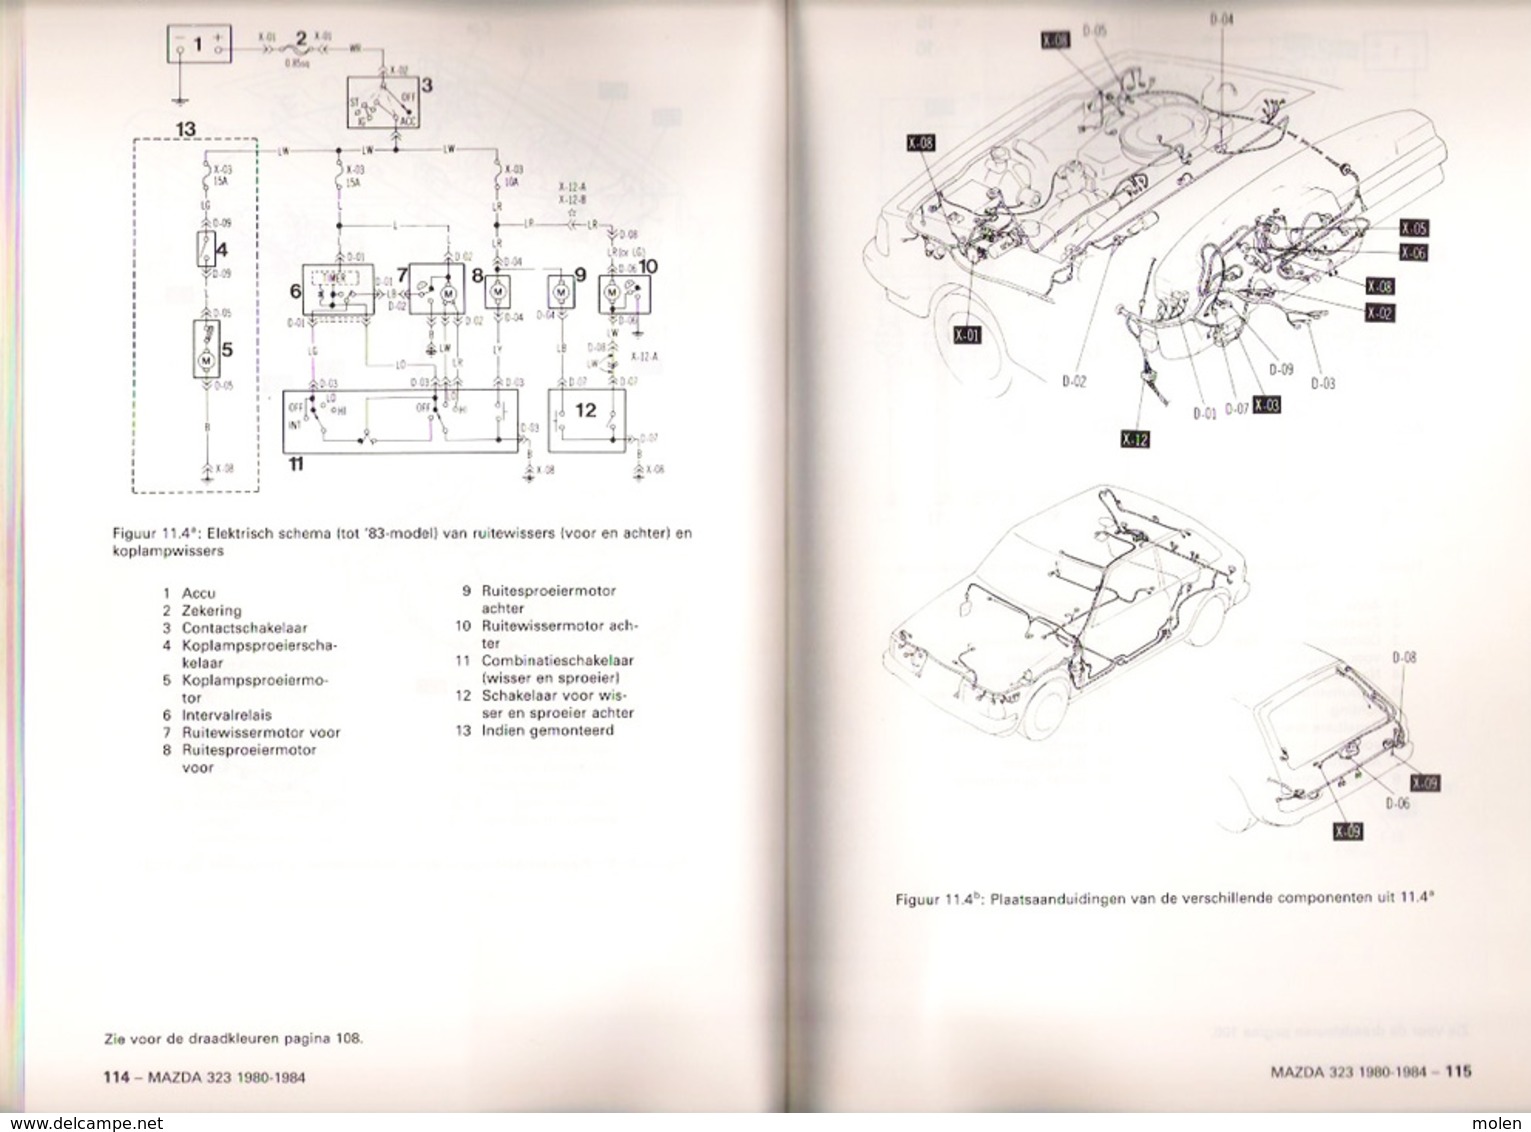 VRAAGBAAK MAZDA 323 modellen 1980-1984 * Handleiding onderhoud & afstelgegevens door P H OLVING ©1984 174blz AUTO Z931